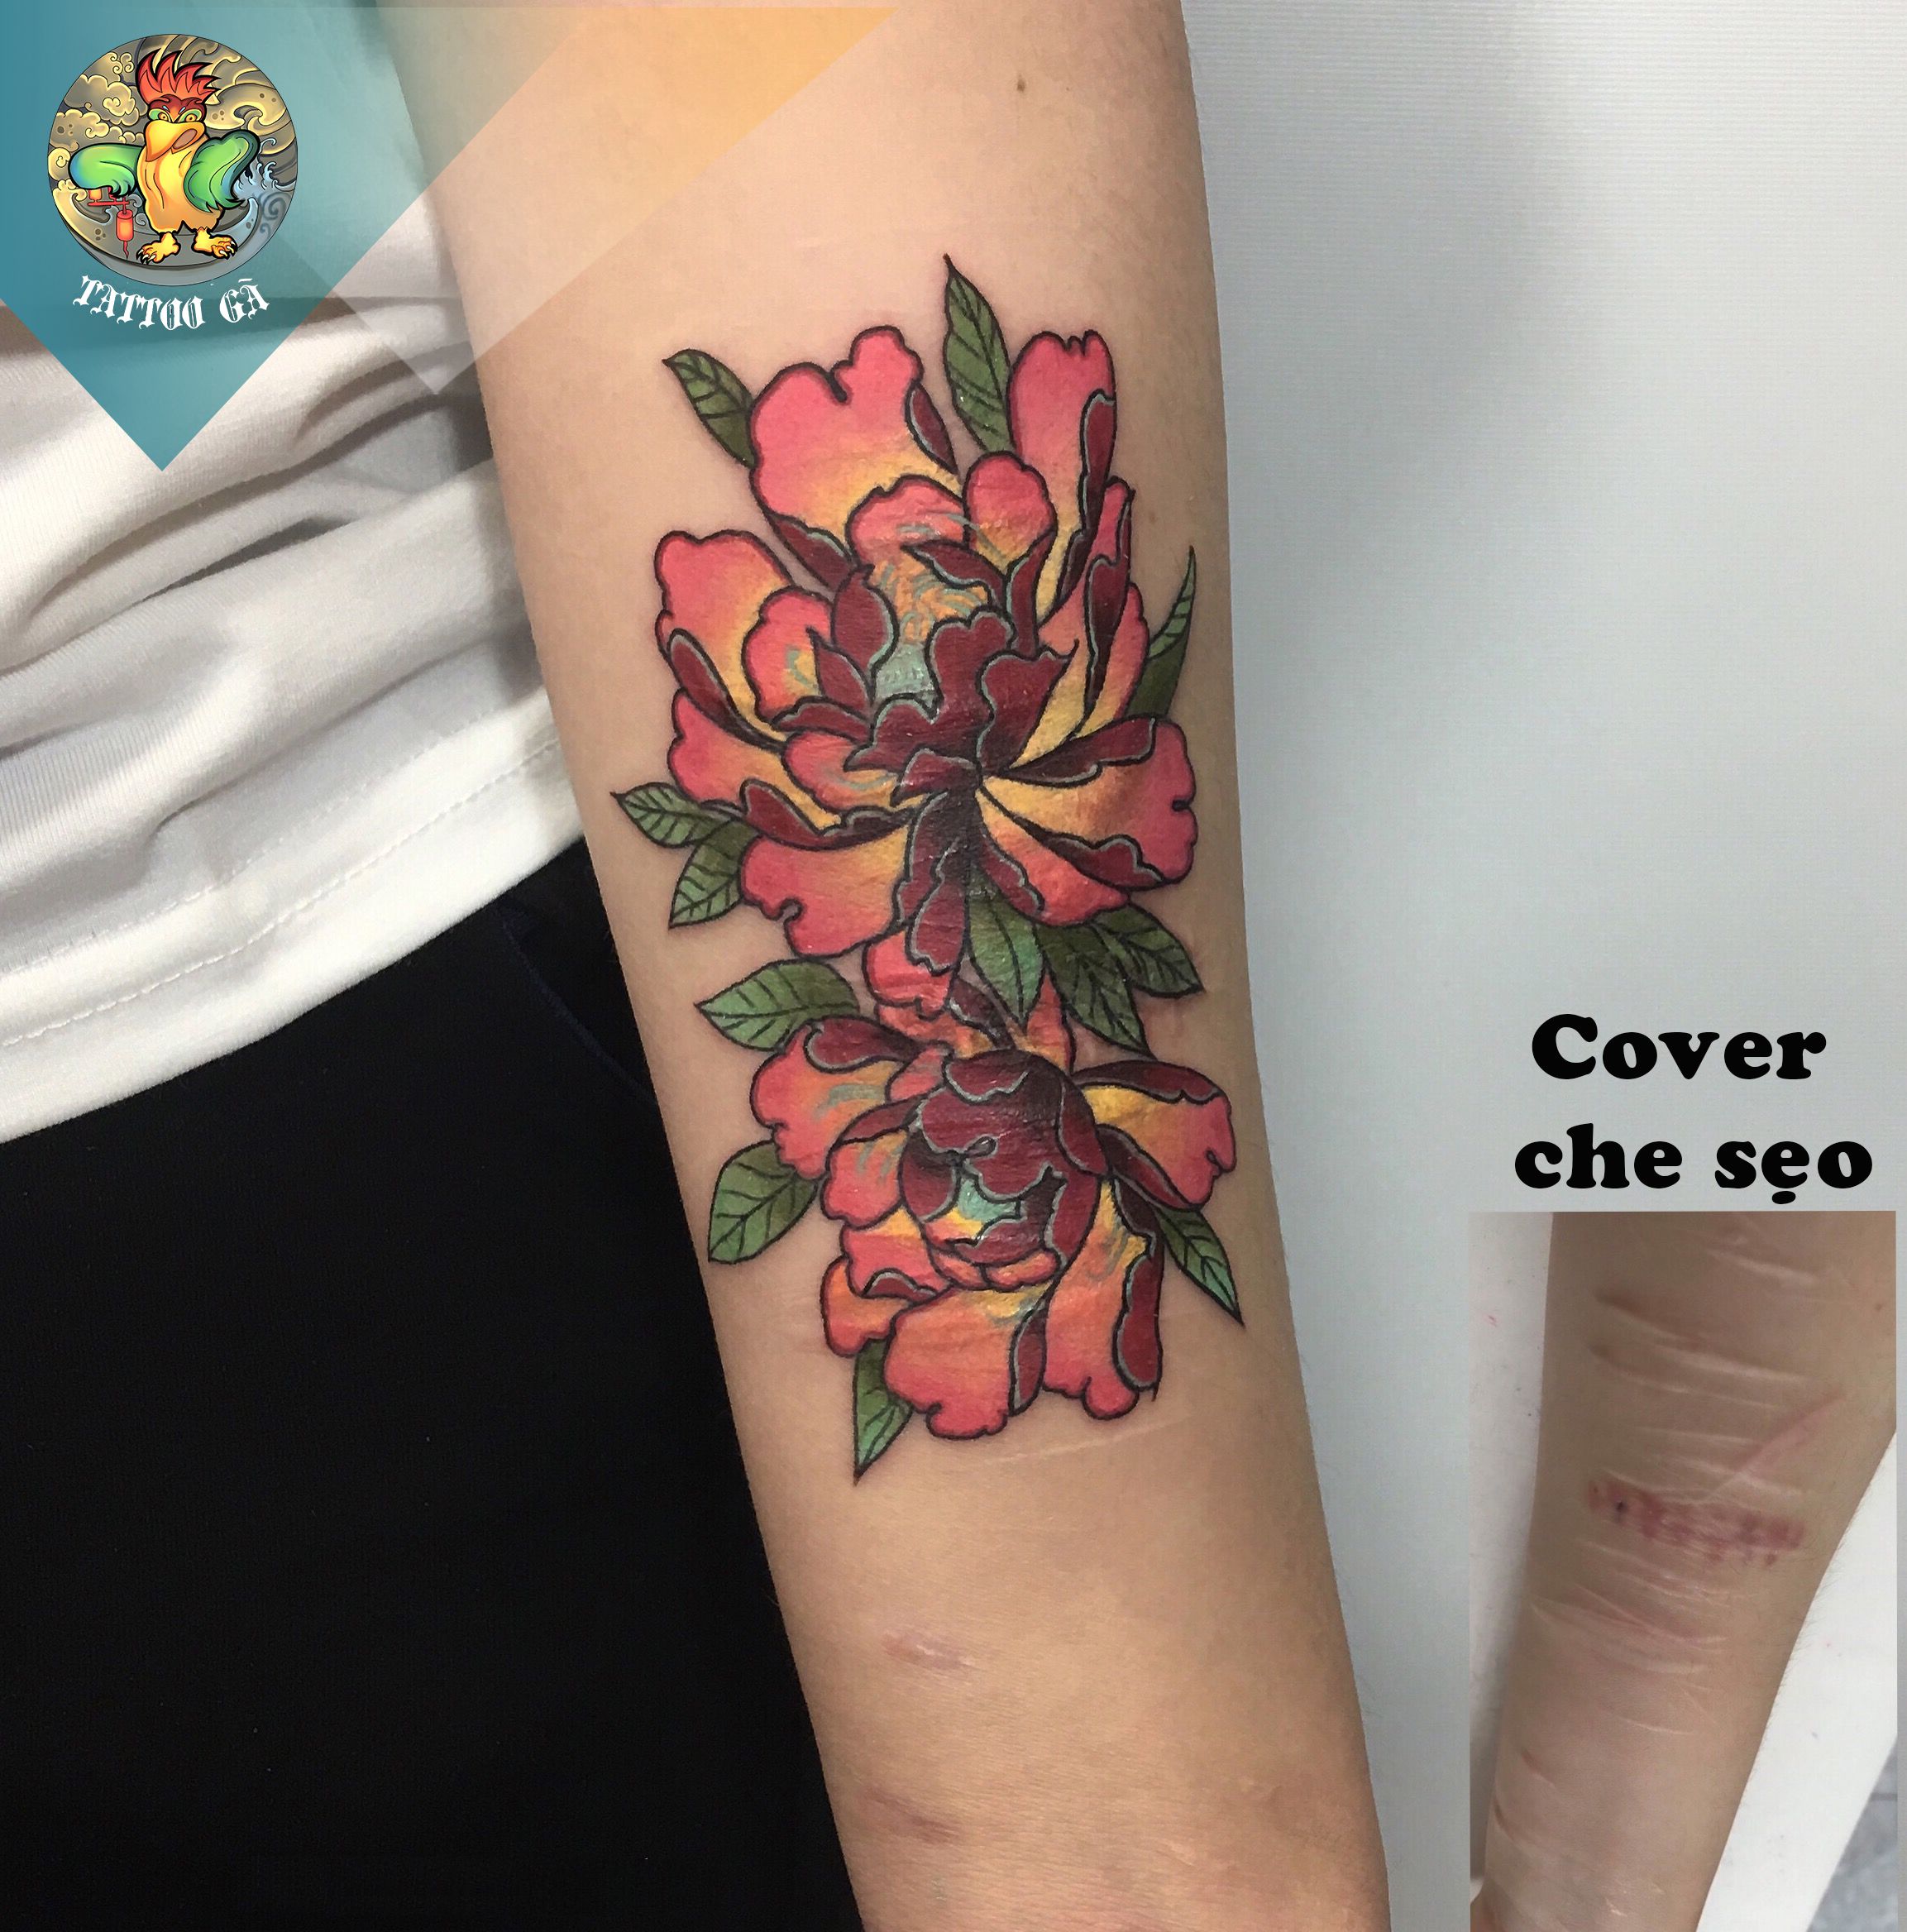 Cover hình xăm cá chép và hoa sen đẹp tại Ken Biên Hoà Tattoo  Biên Hòa  Tattoo